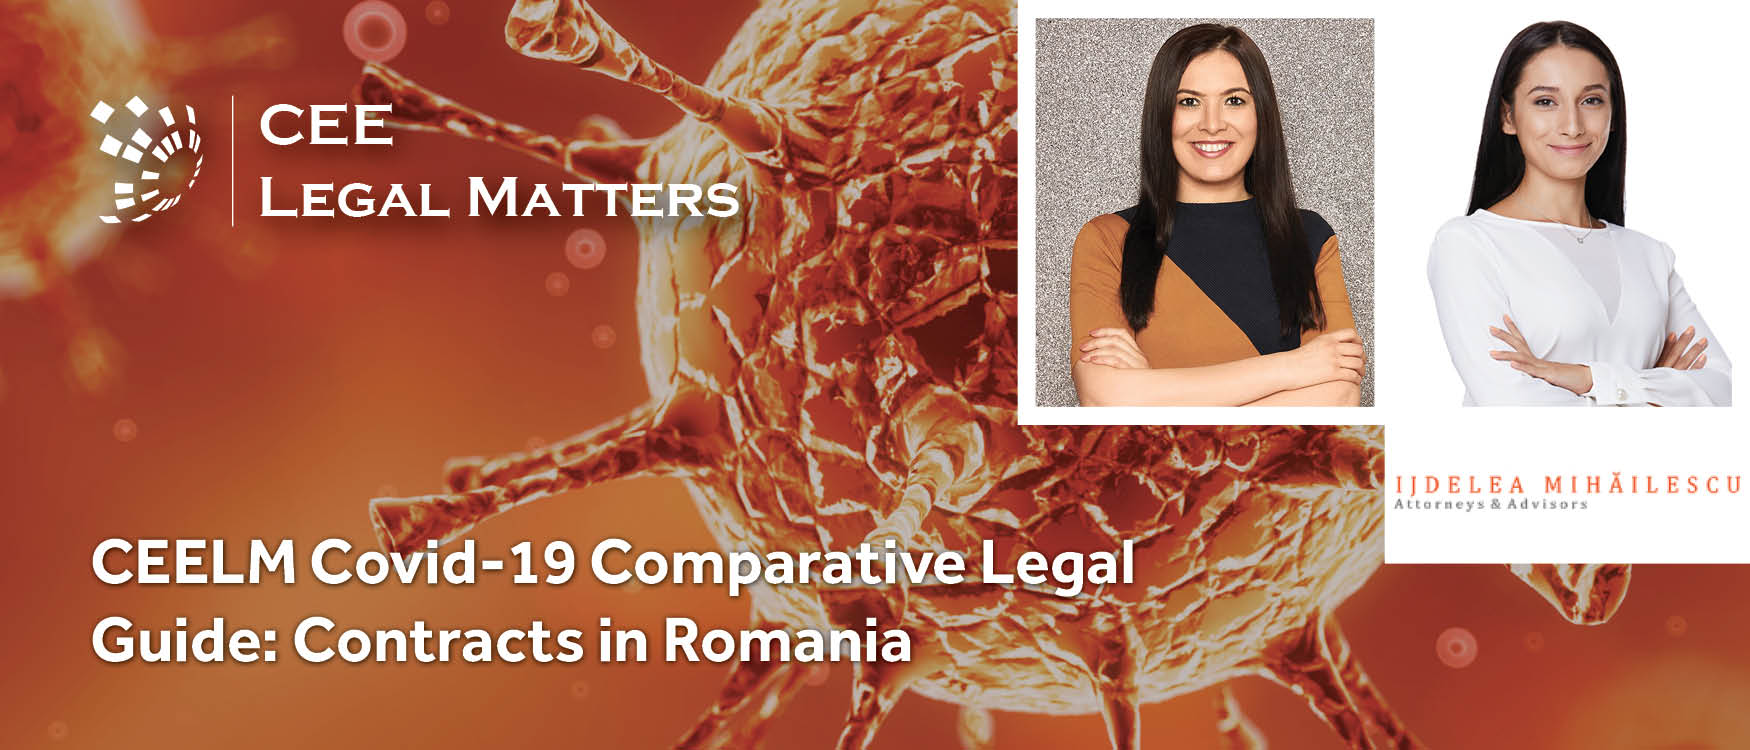 CEELM Covid-19 Comparative Legal Guide: Contracts in Romania